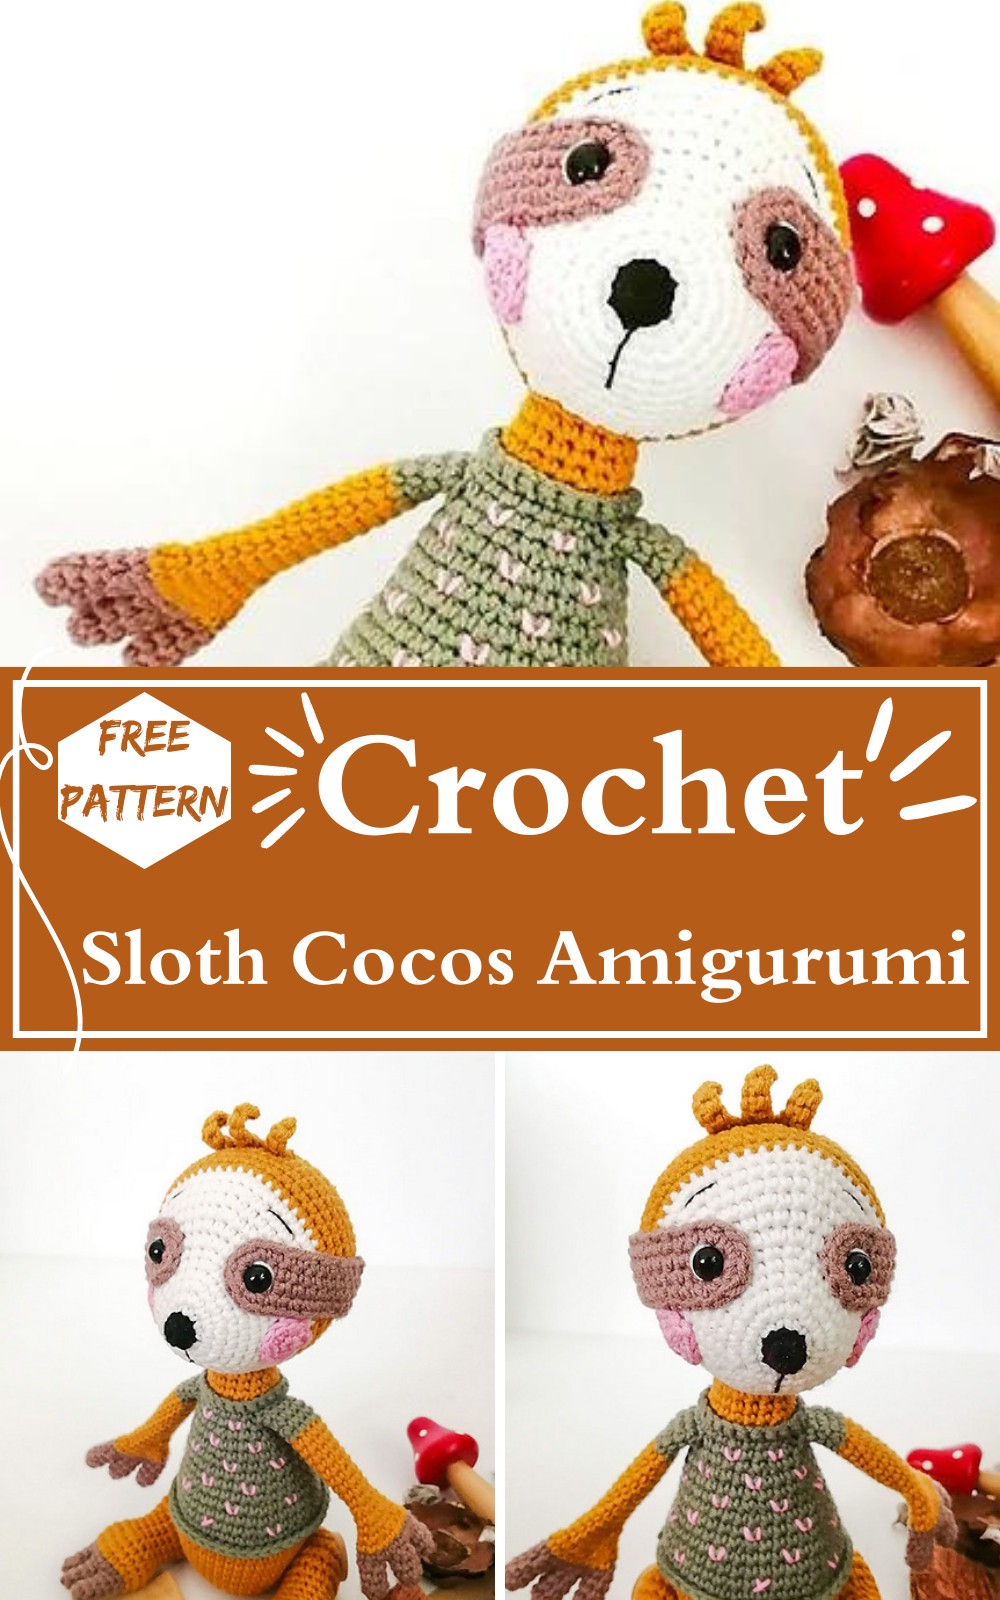 Crochet Sloth Cocos Amigurumi